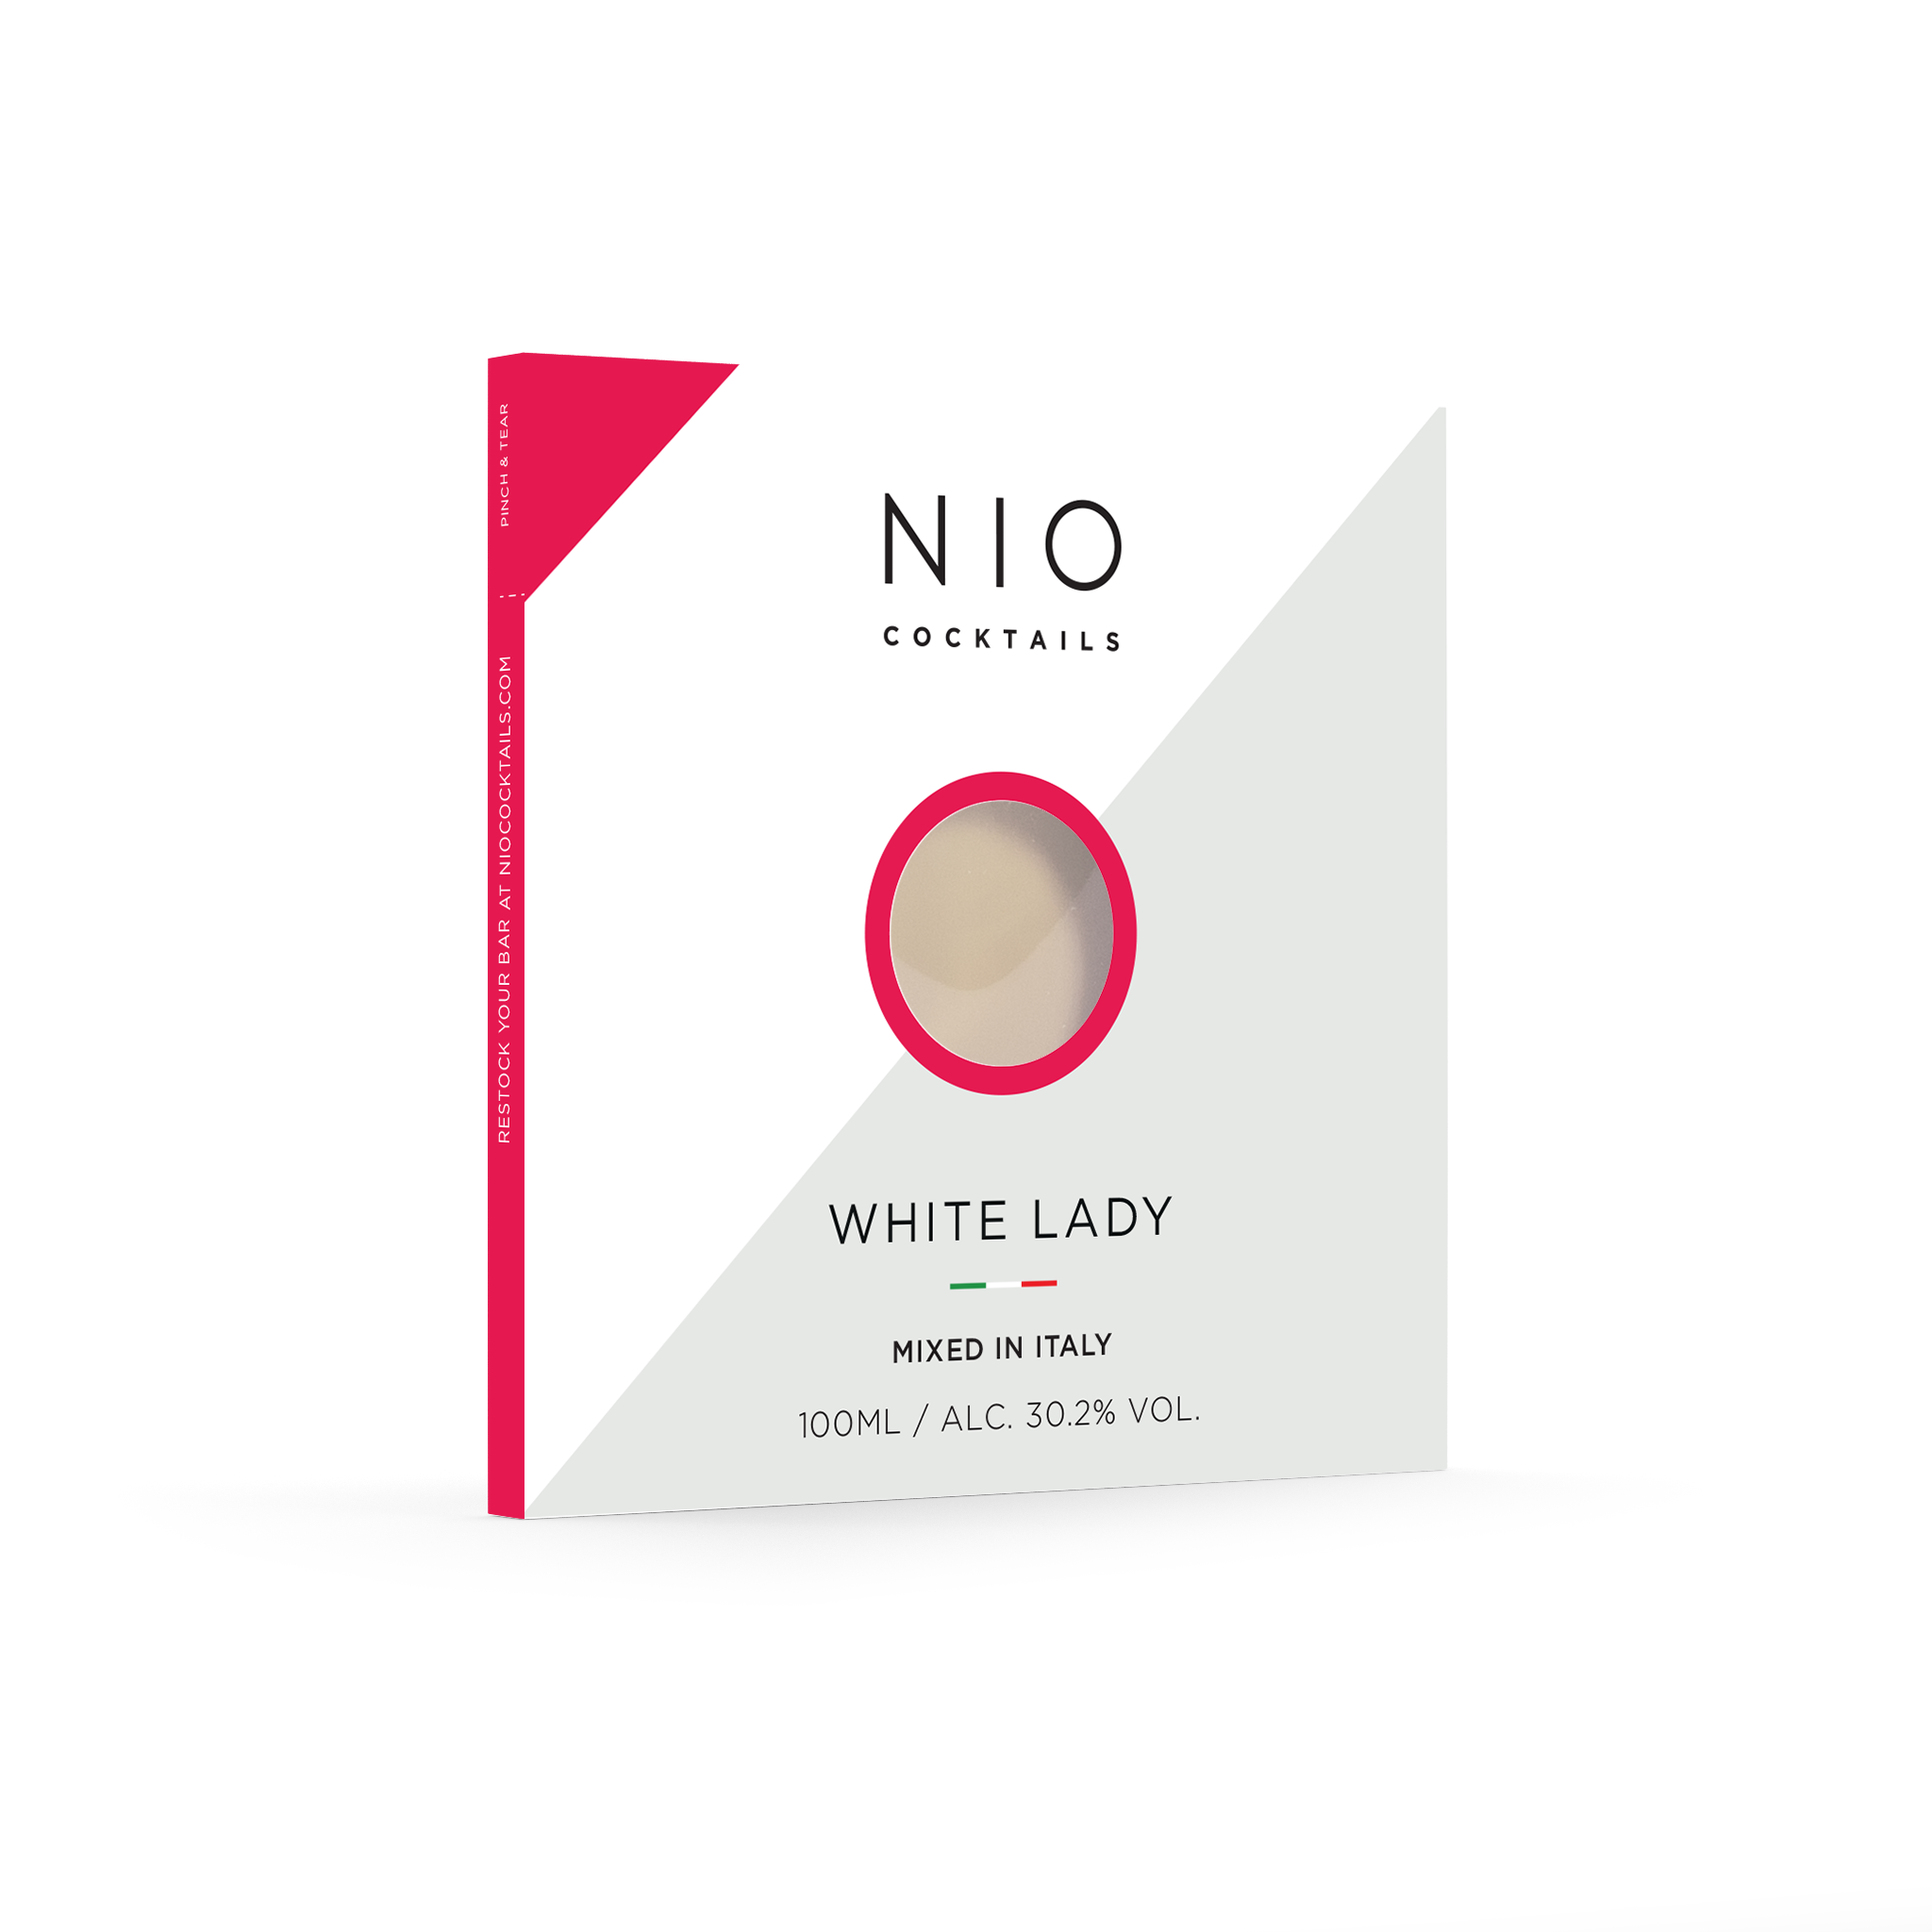    NIO-Cocktails-White-Lady-skin